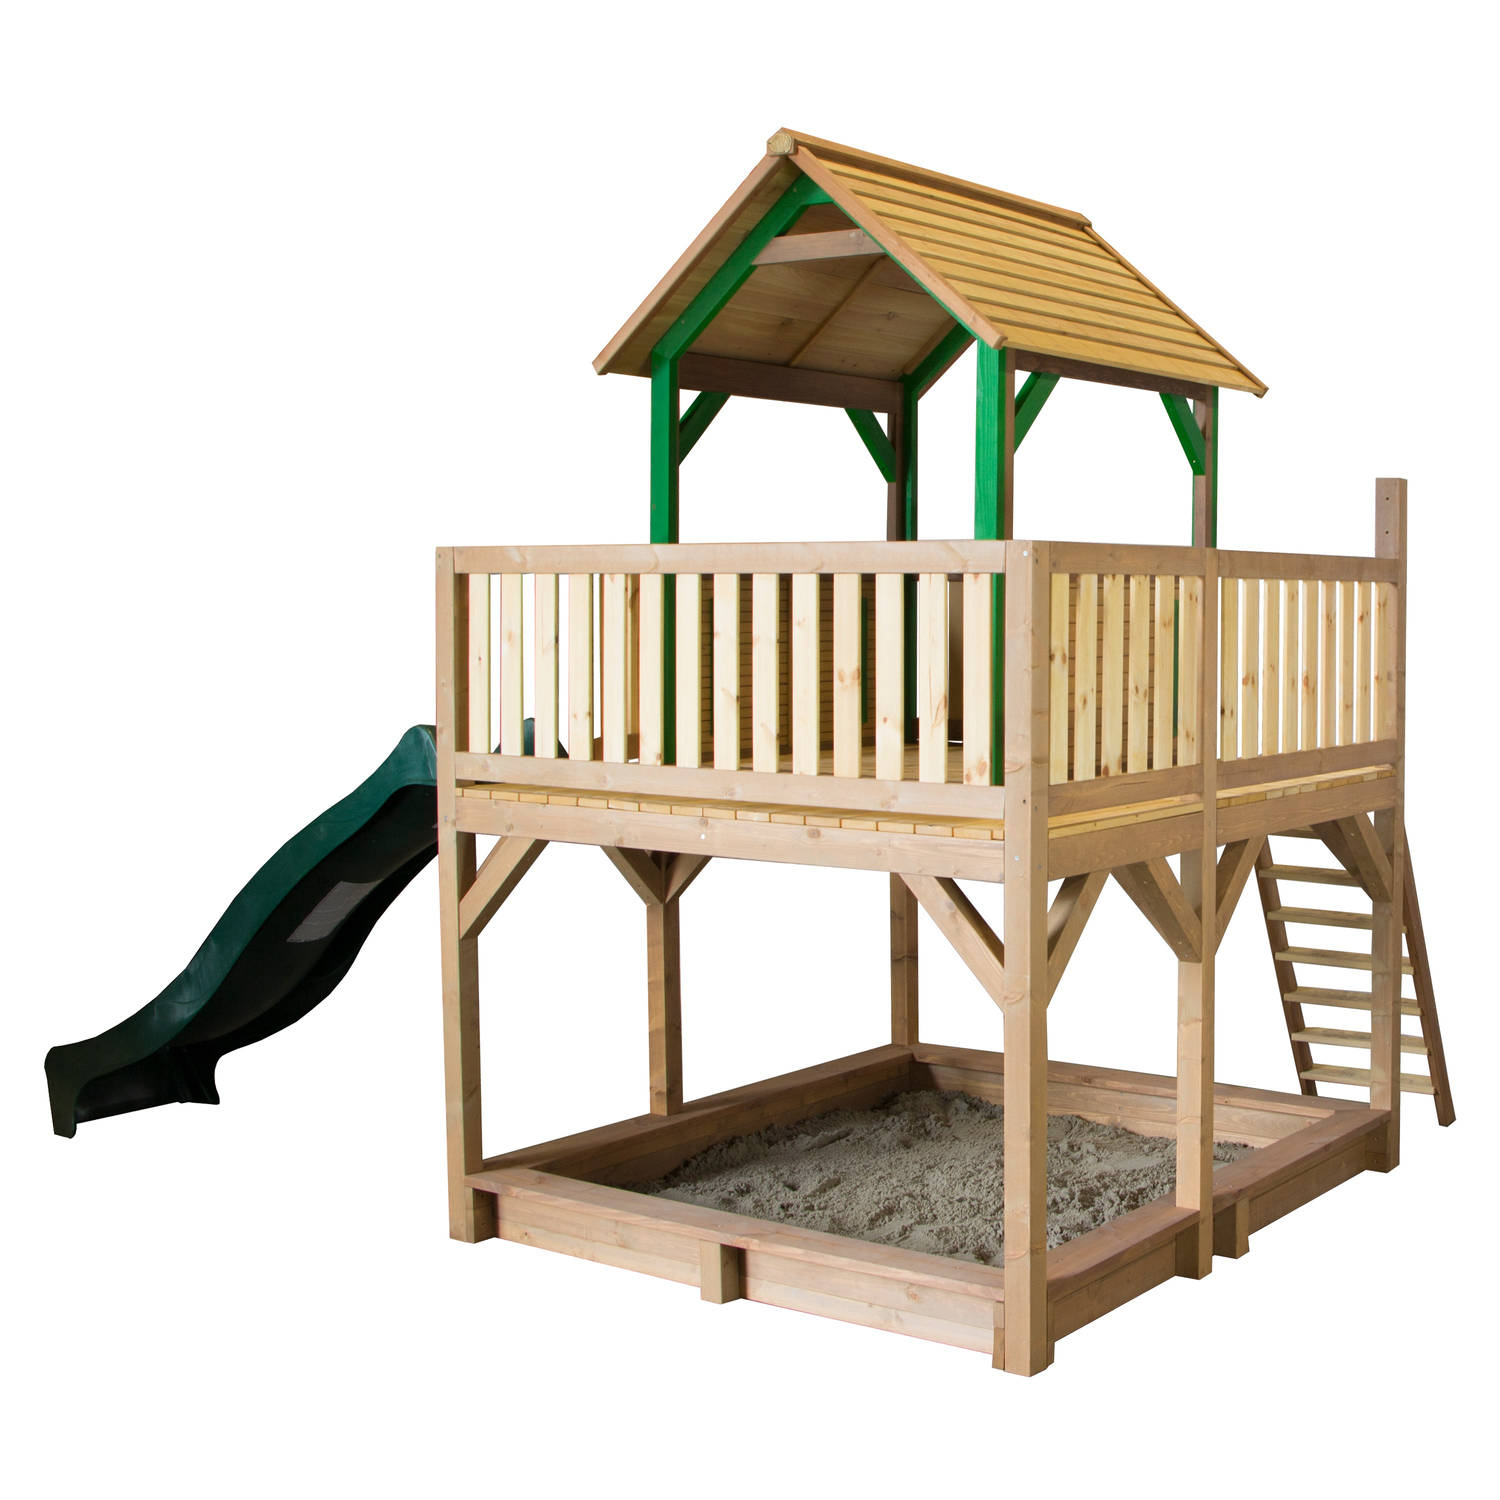 AXI Atka Speeltoestel in Bruin/Groen - Speeltoren met Verdieping, Zandbak en Groene Glijbaan - FSC hout - Speelhuisje op palen met veranda voor kinderen - Speeltoestel voor de tuin